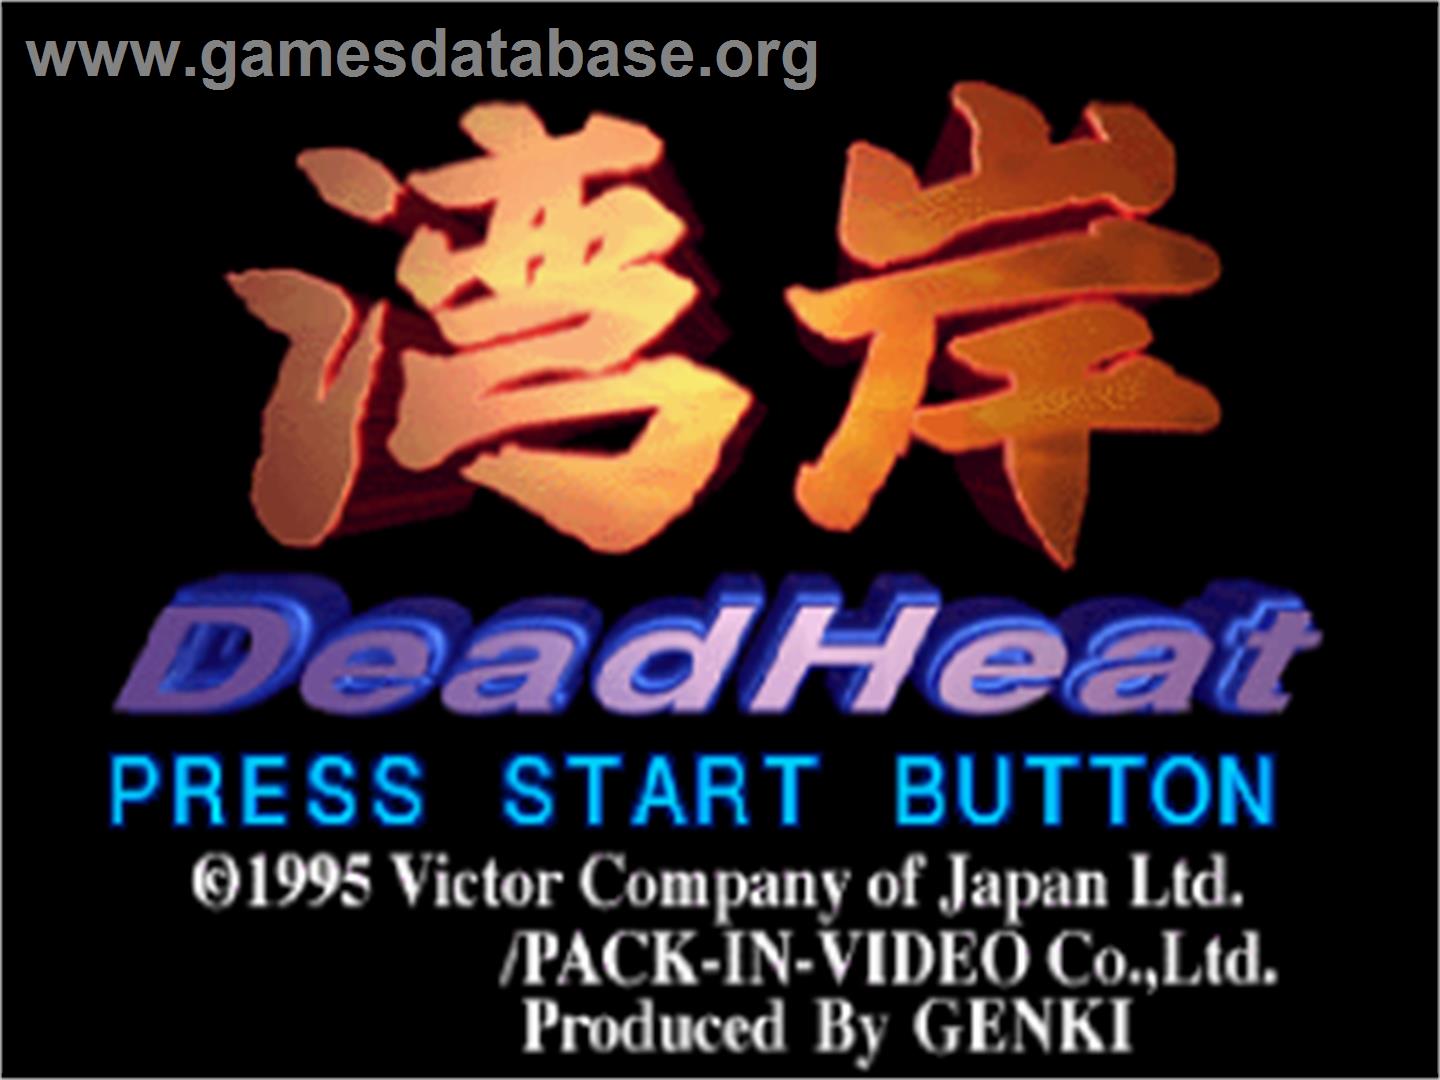 Wangan Dead Heat - Sega Saturn - Artwork - Title Screen